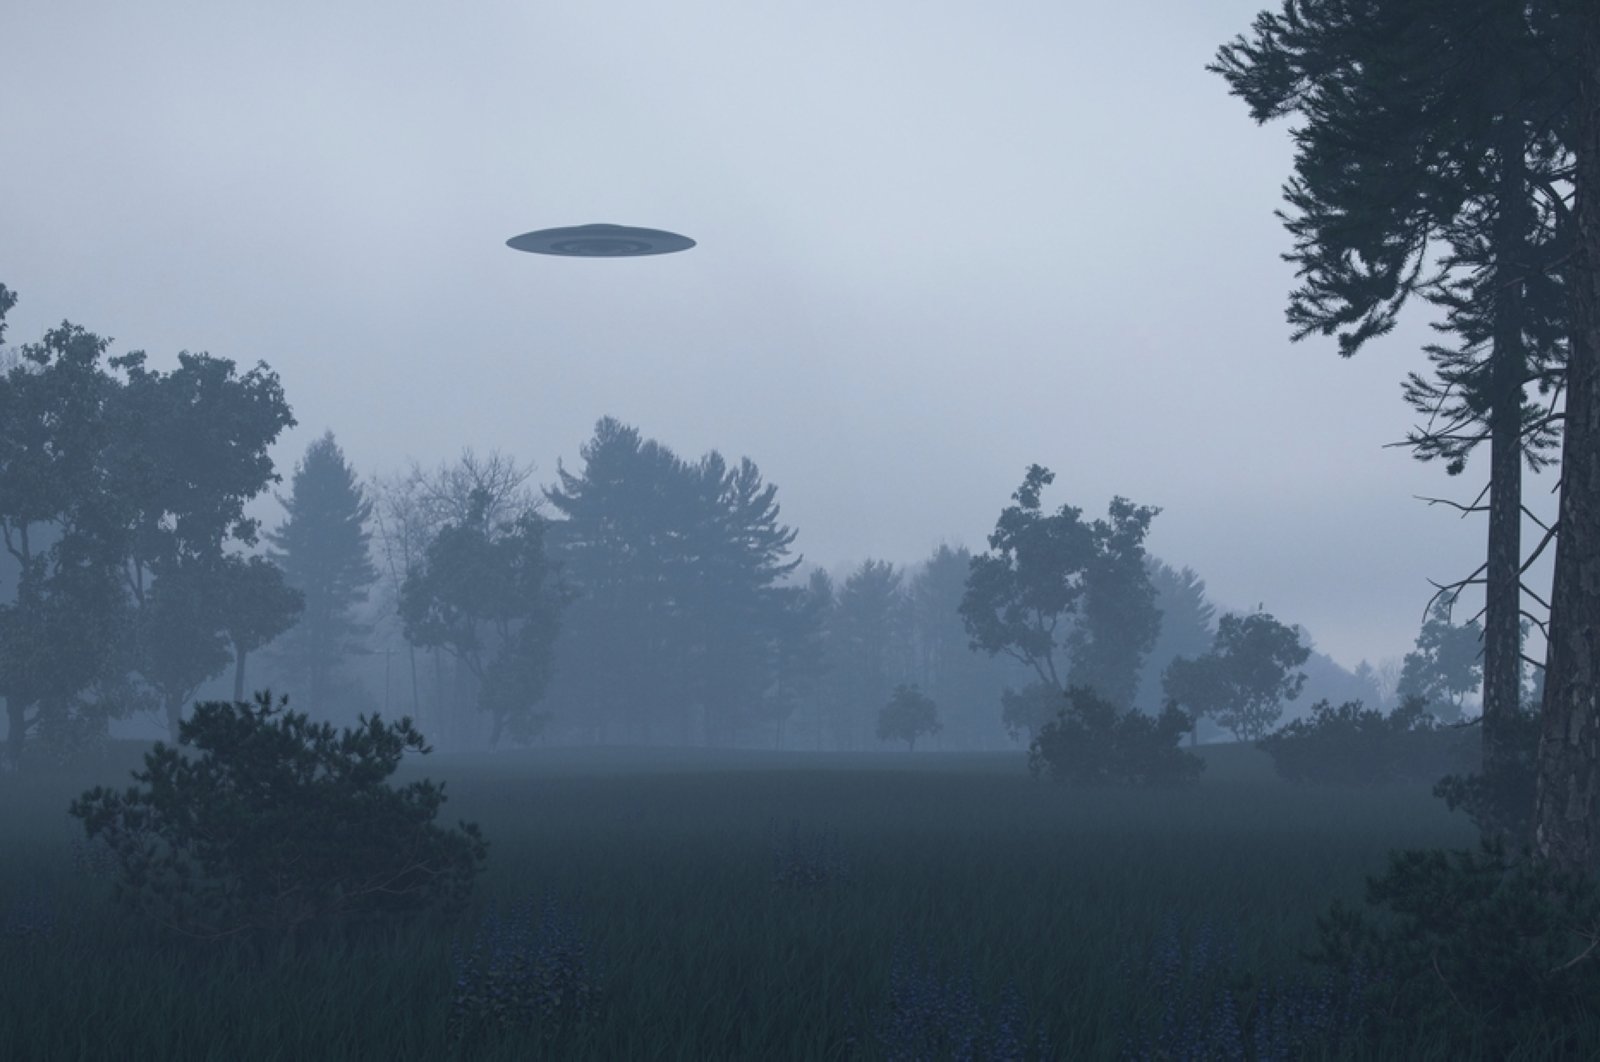 Pemerintah AS mengintensifkan investigasi UFO setelah 50 tahun